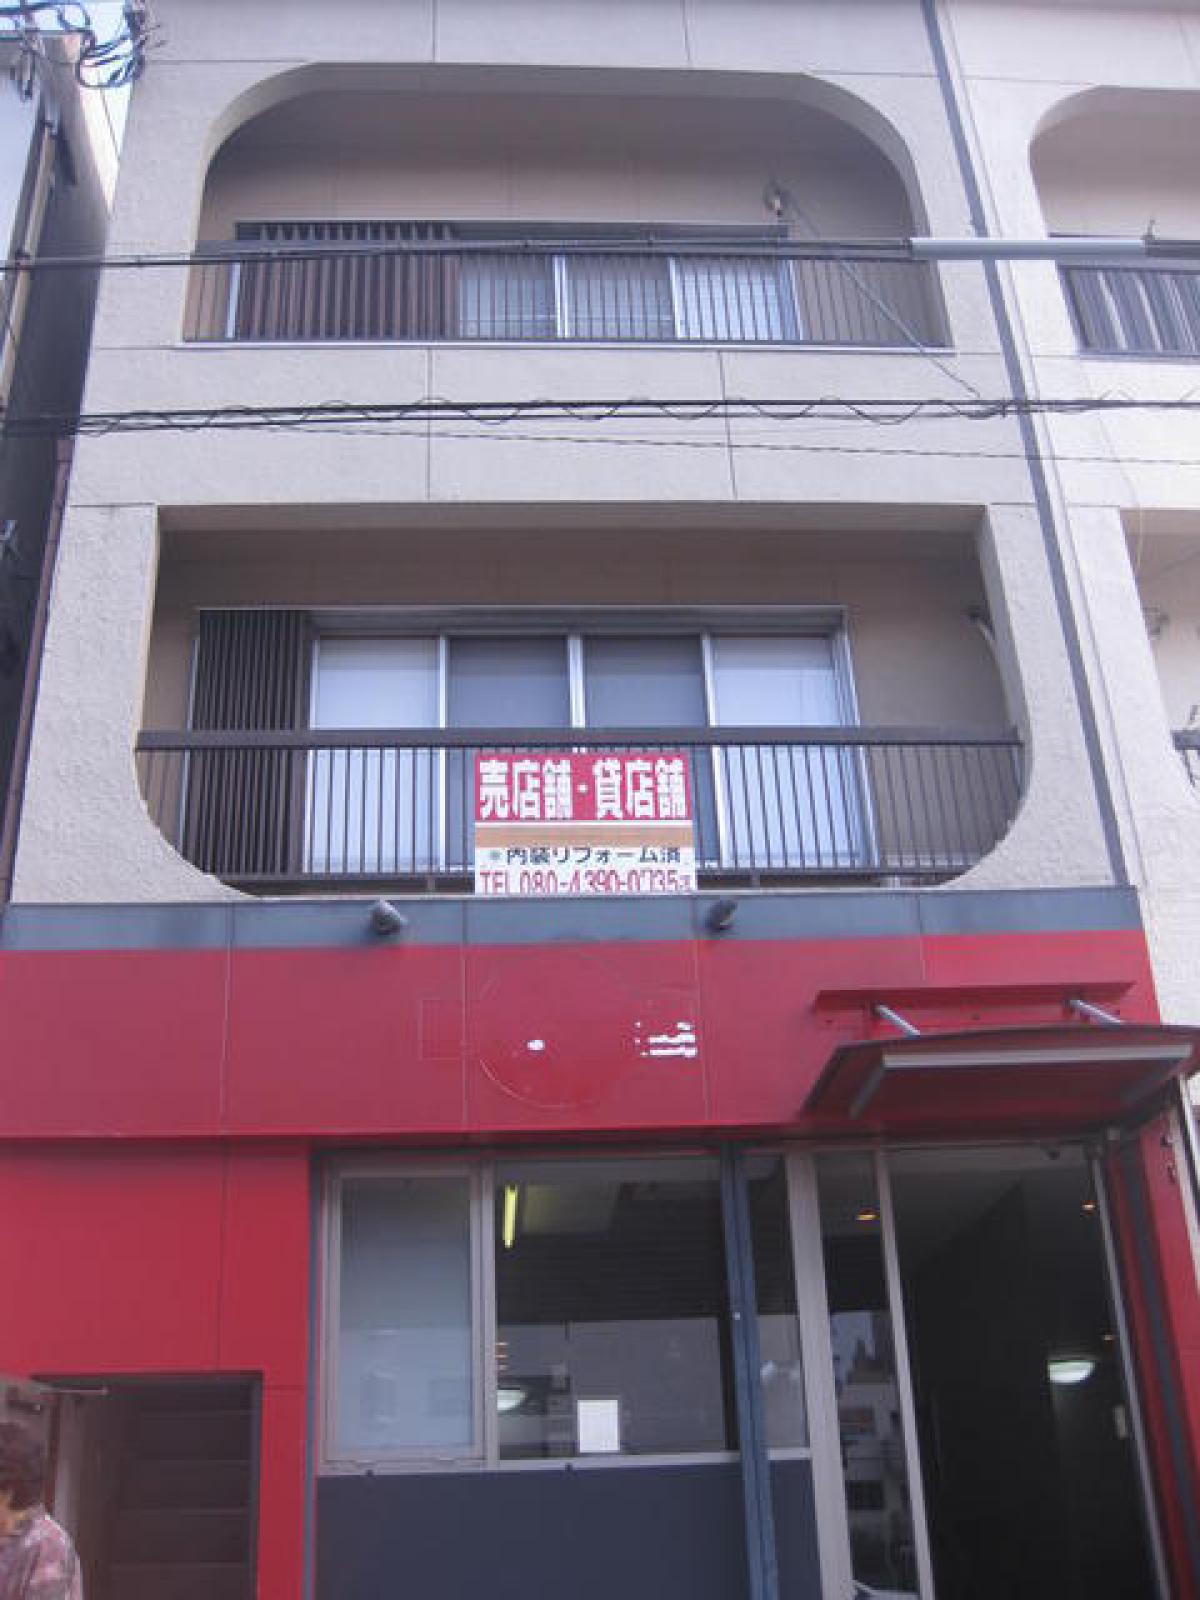 Picture of Home For Sale in Sakai Shi Naka Ku, Osaka, Japan